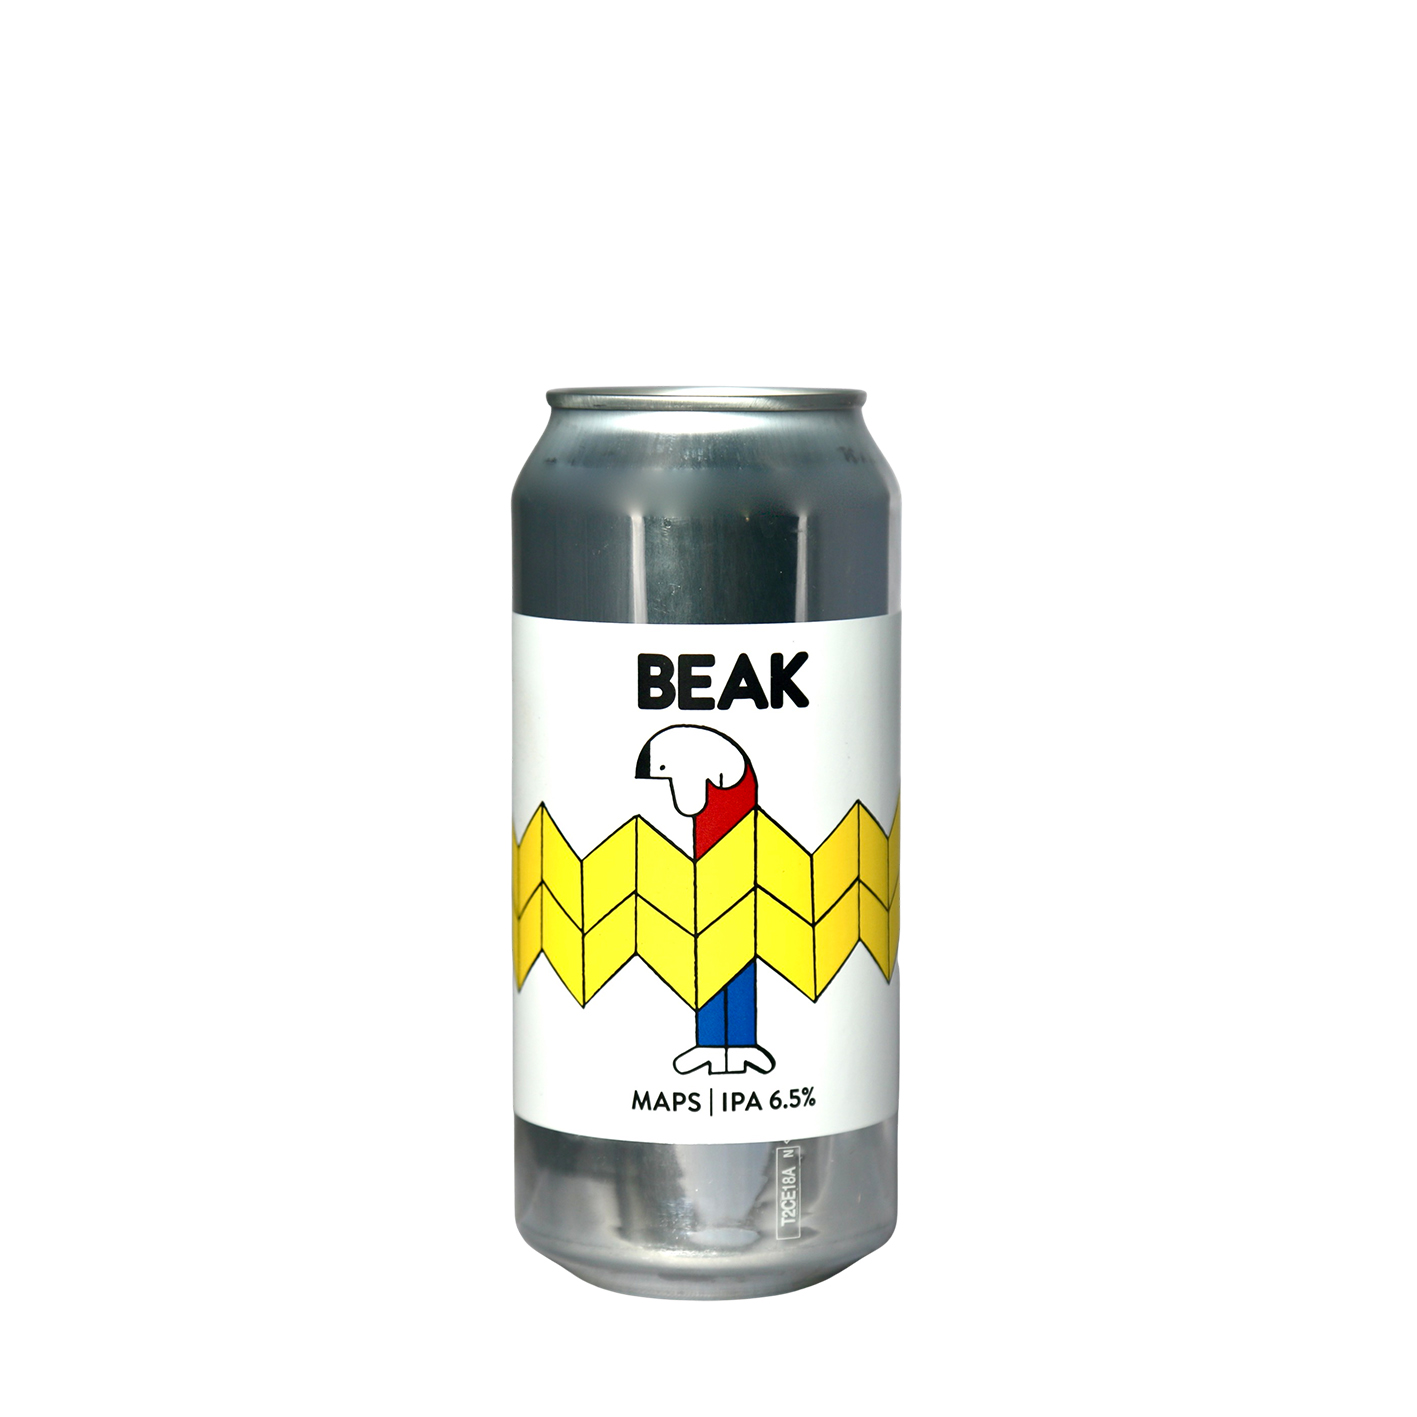 Beak Brewery - Maps IPA | Buy Online | Craft Metropolis